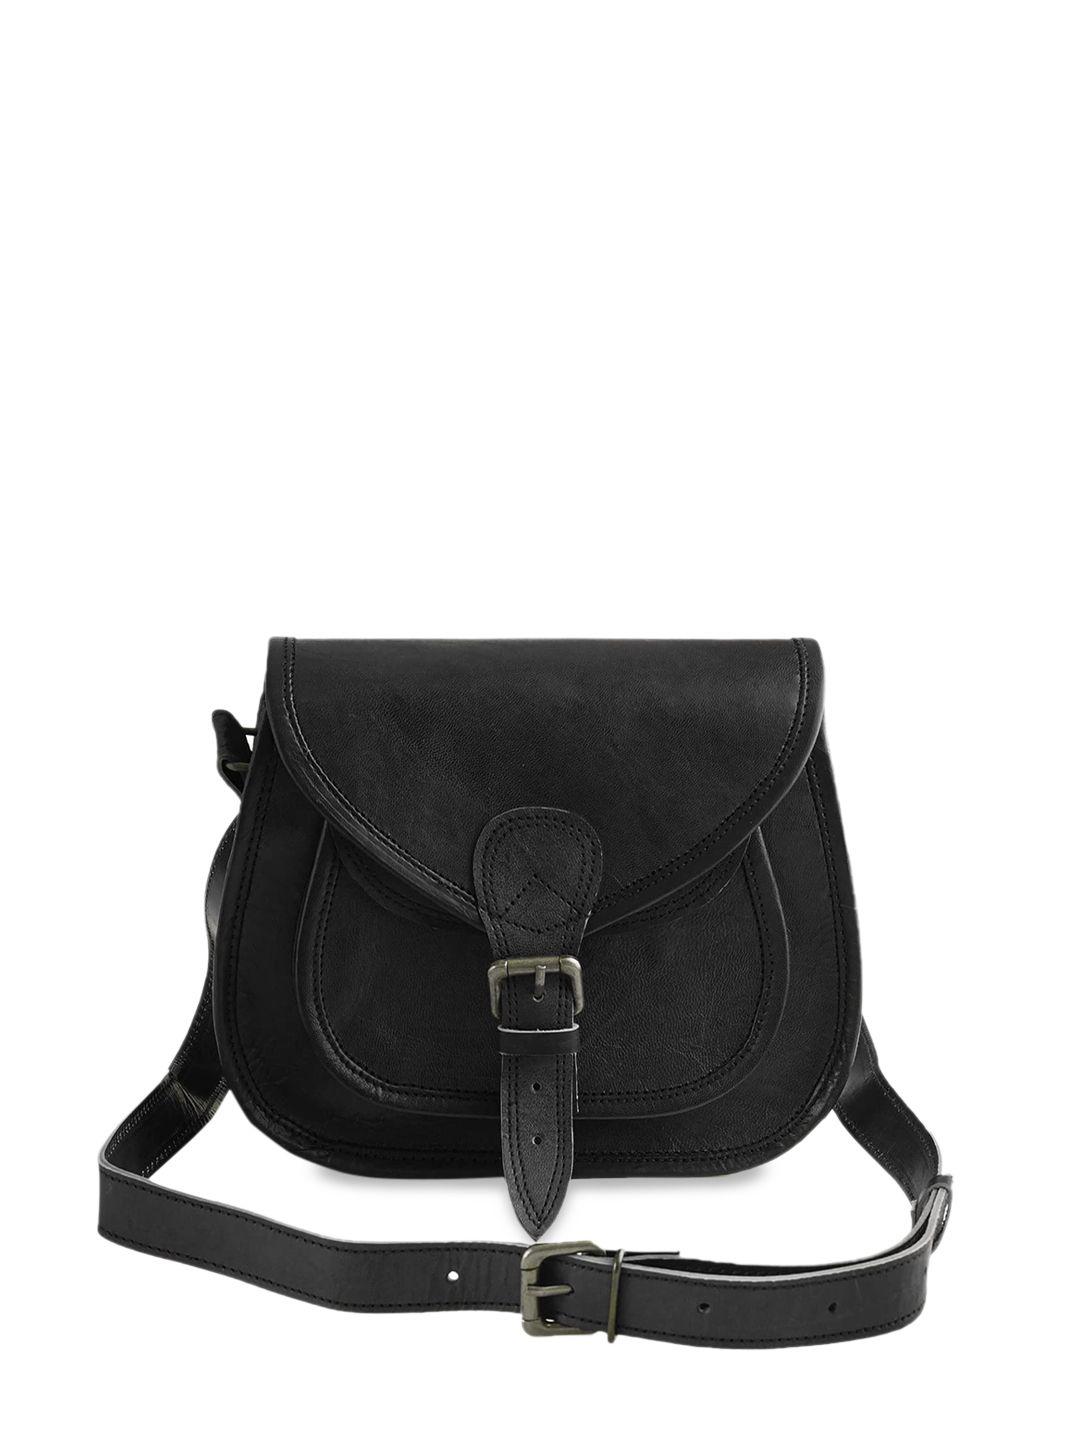 goatter women black leather structured sling bag